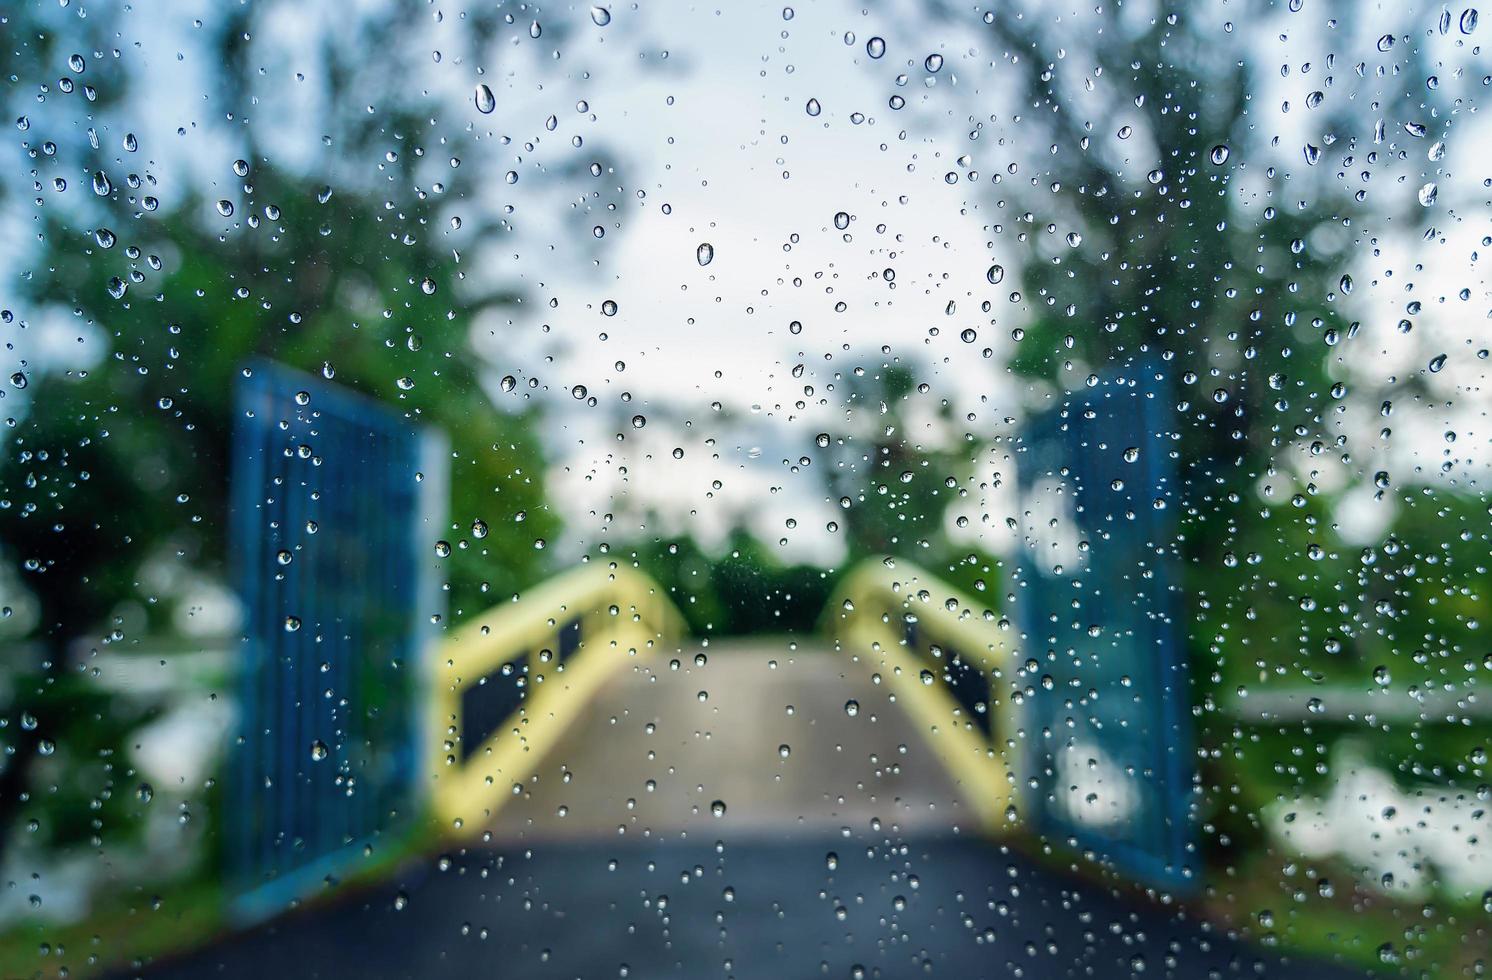 gouttelettes de pluie sur la surface de la vitre de la voiture avec une nature verte floue et un fond de pont à travers la vitre de la voiture couverte de gouttes de pluie. fraîcheur après la pluie. pare-brise mouillé tiré de l'intérieur de la voiture. photo